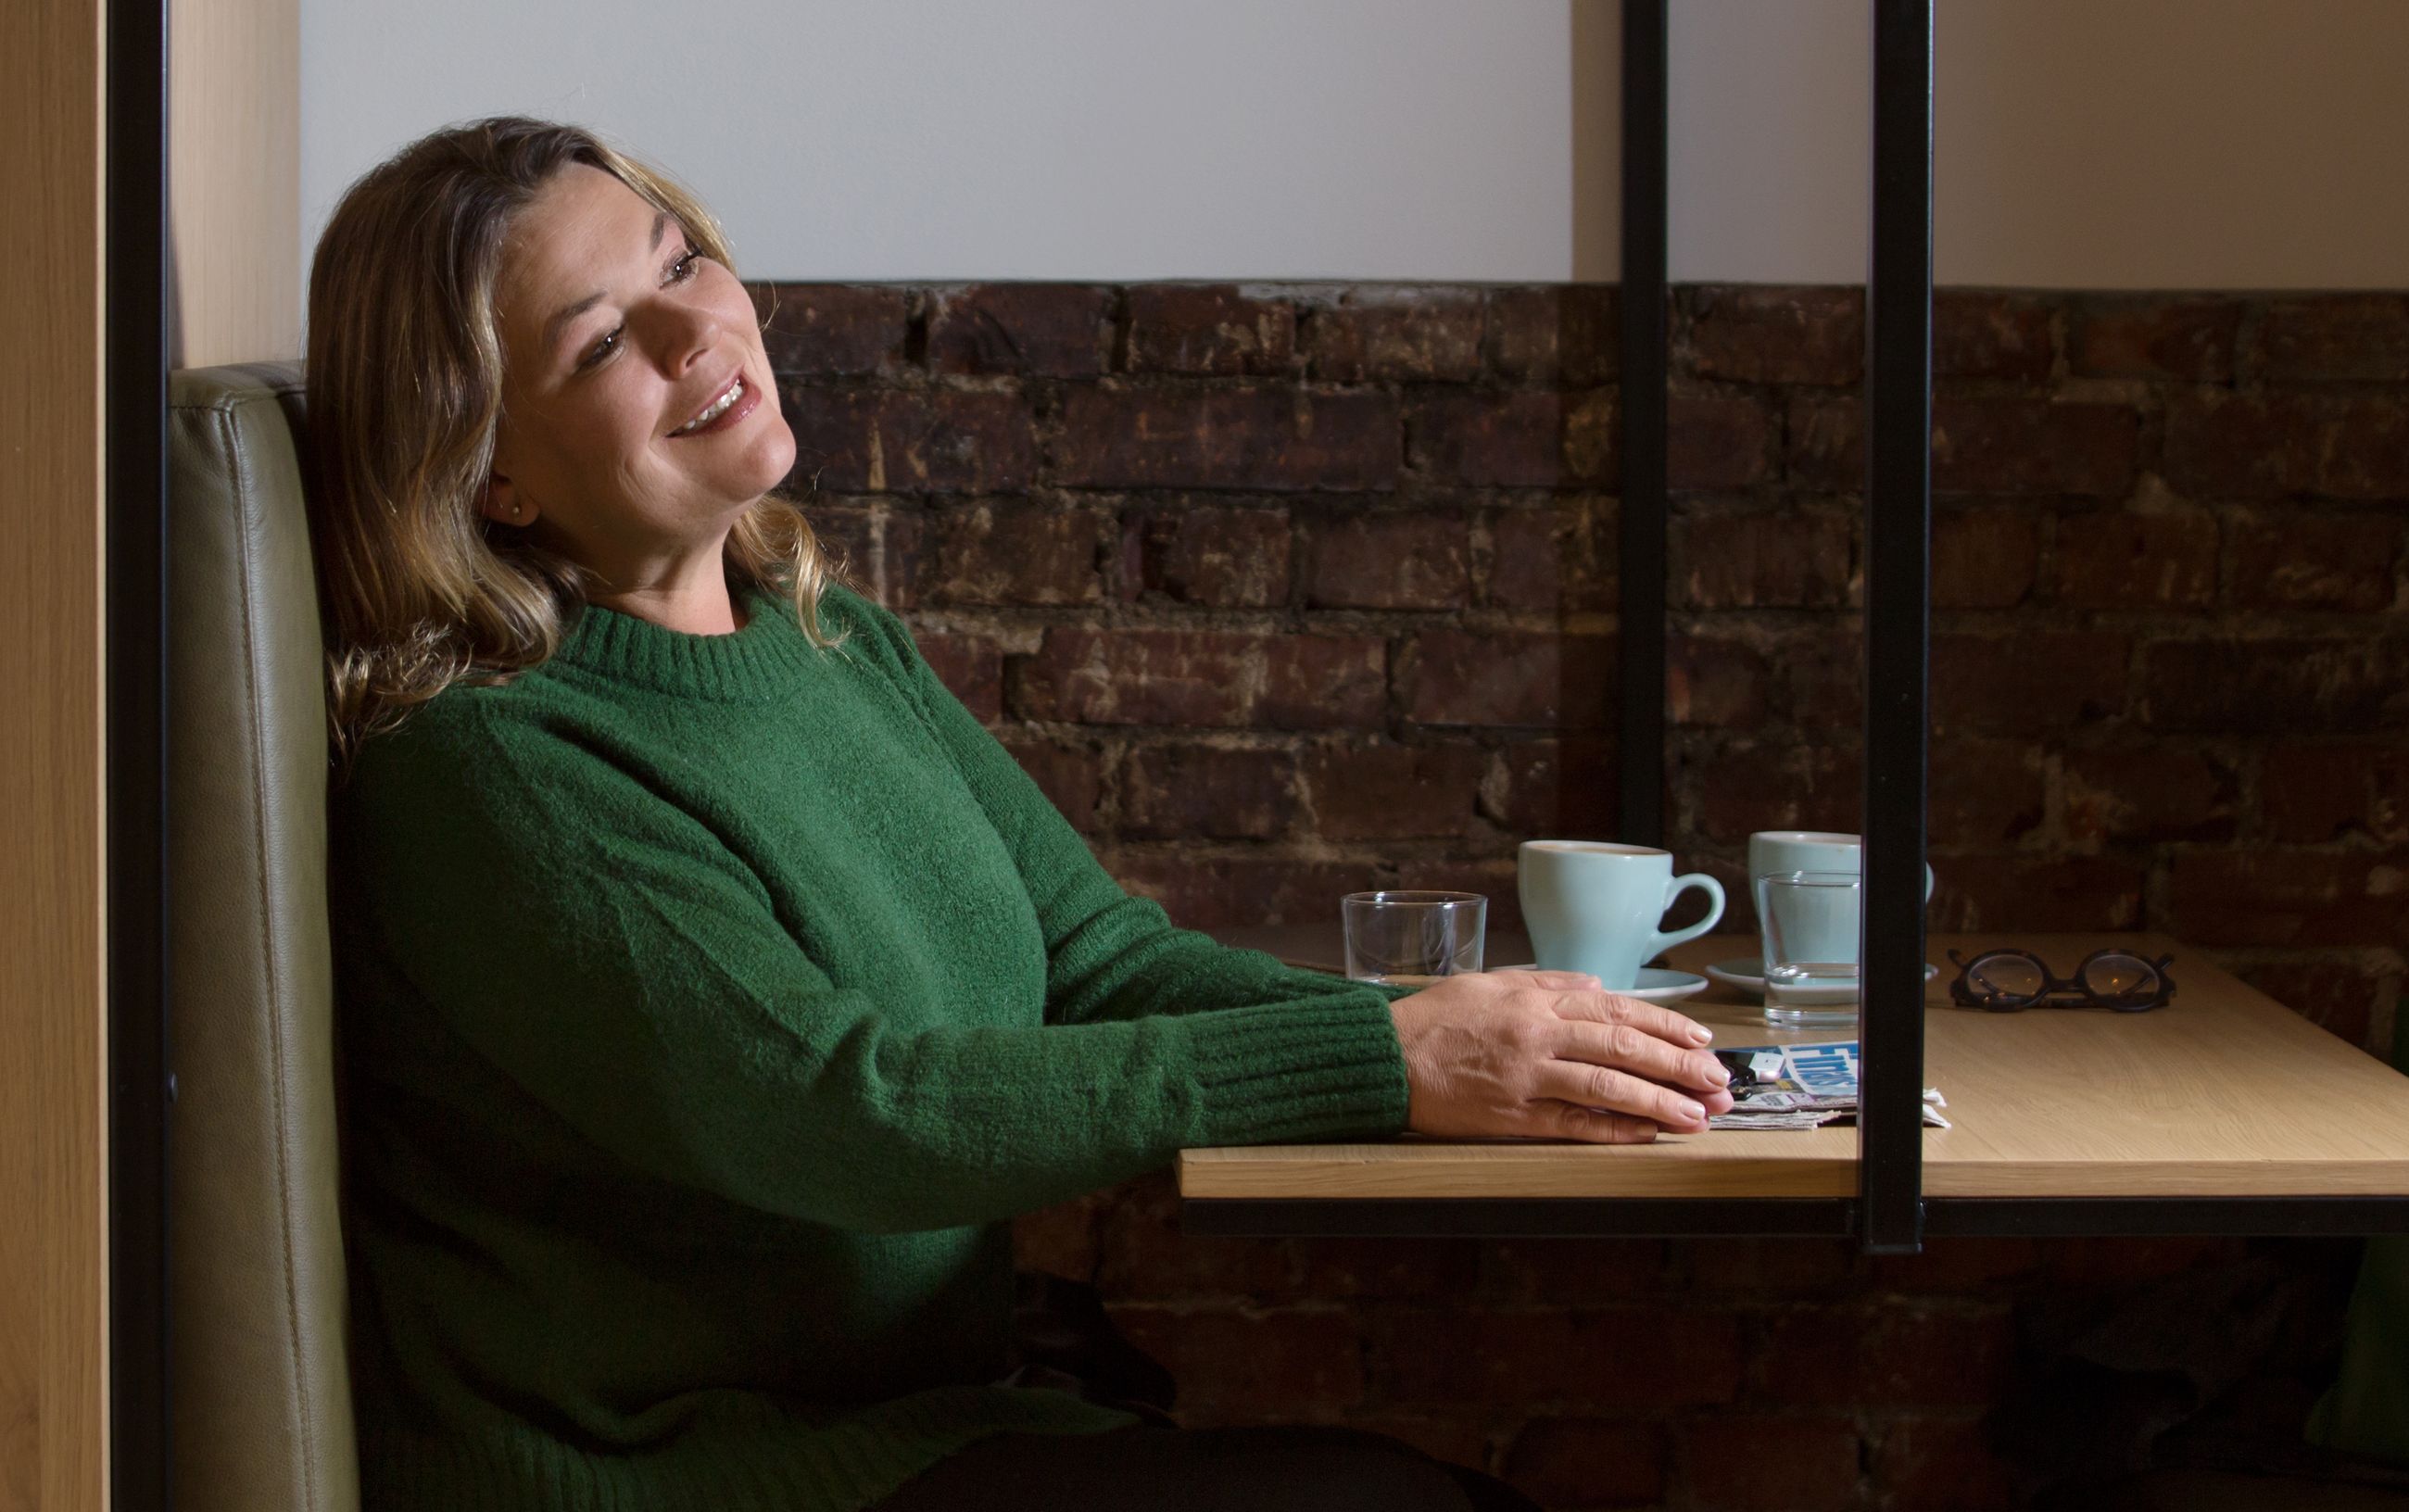 Verdier: Kvinne i grønn genser sitter i en kafébås og smiler.